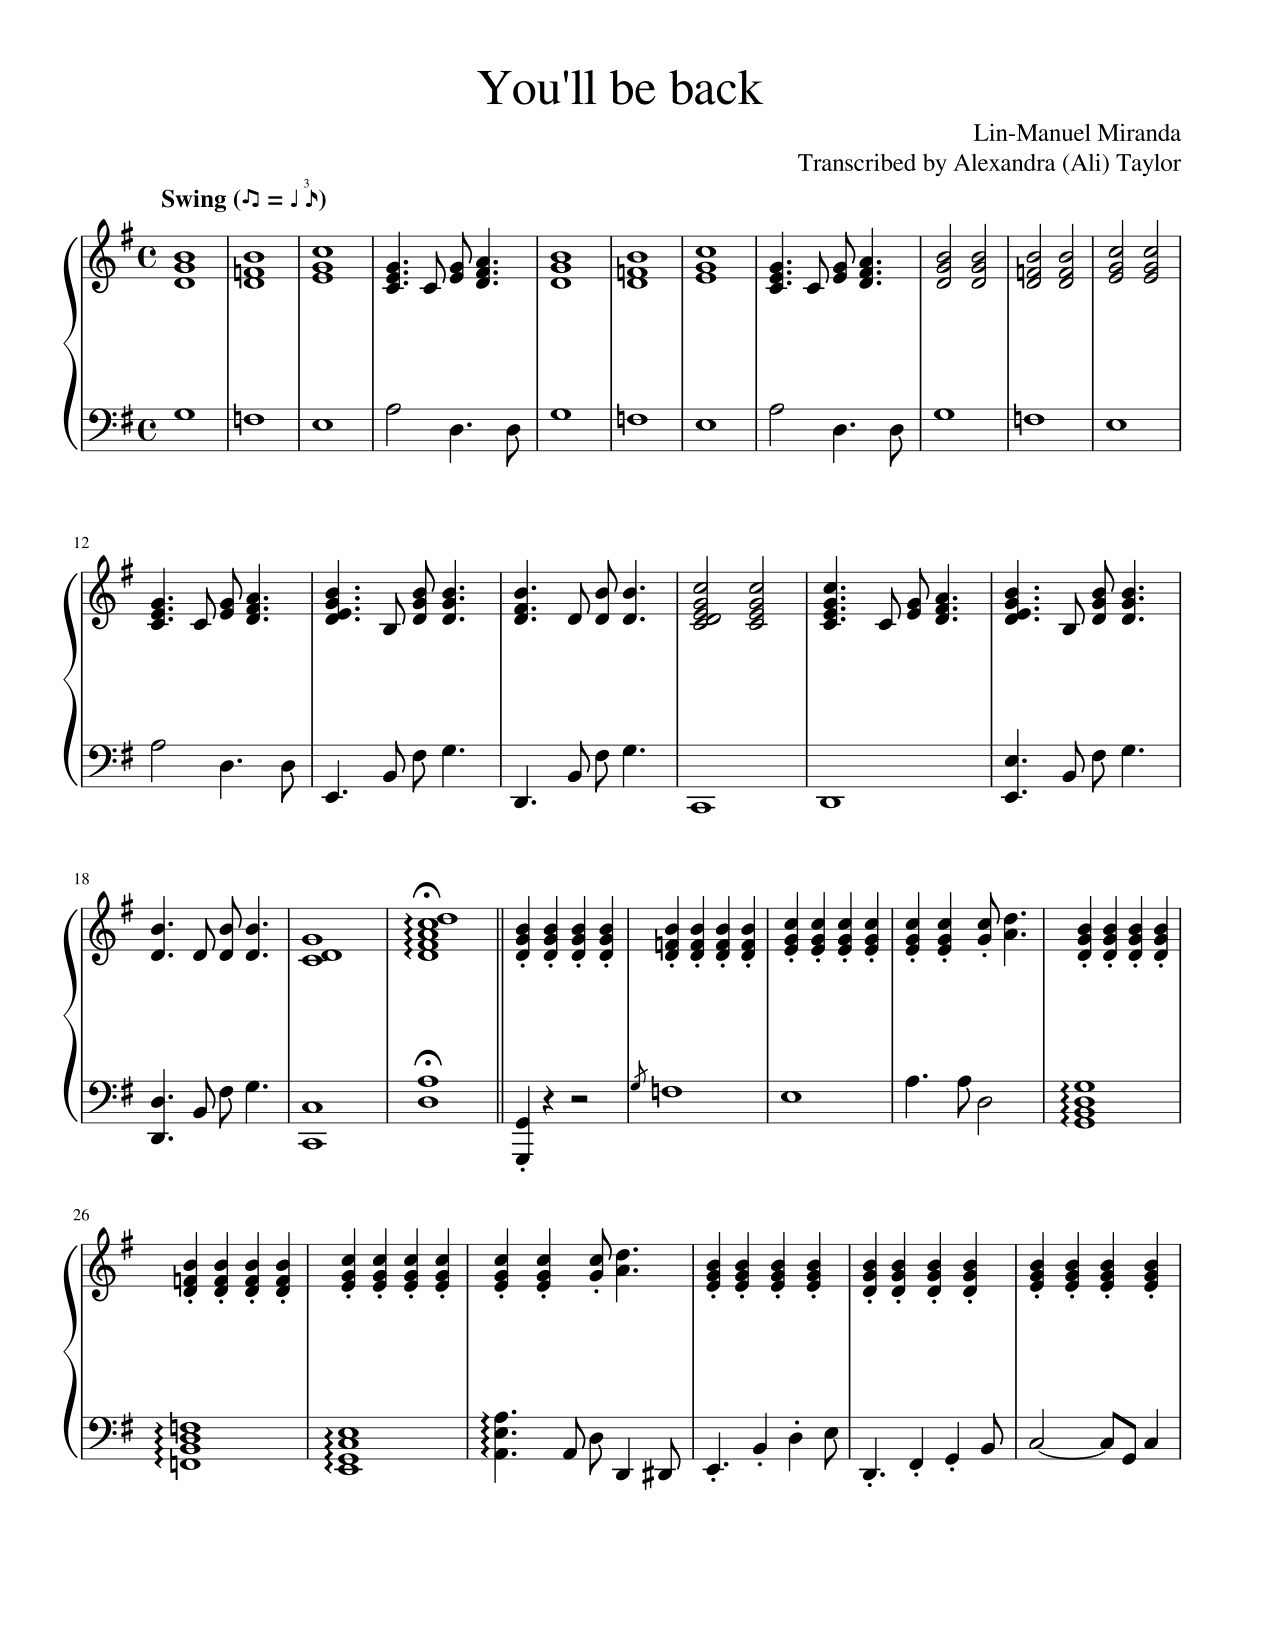 Aaron Burr Sir Sheet Music